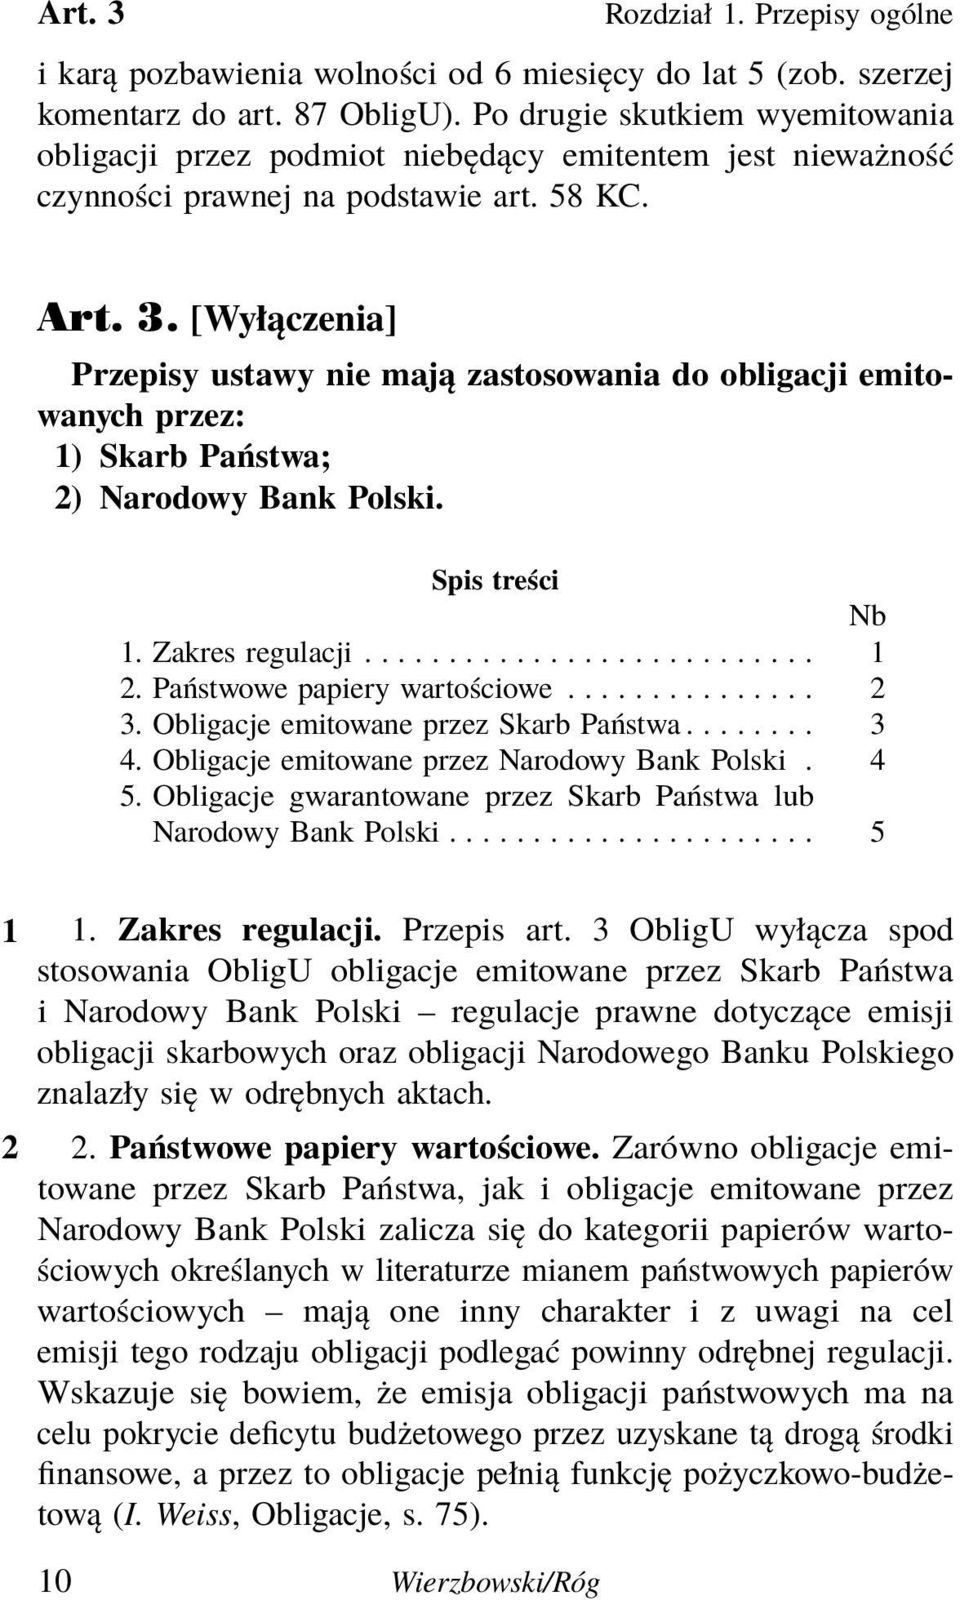 [Wyłączenia] Przepisy ustawy nie mają zastosowania do obligacji emitowanych przez: 1) Skarb Państwa; 2) Narodowy Bank Polski. Spis treści Nb 1. Zakres regulacji........................... 1 2.